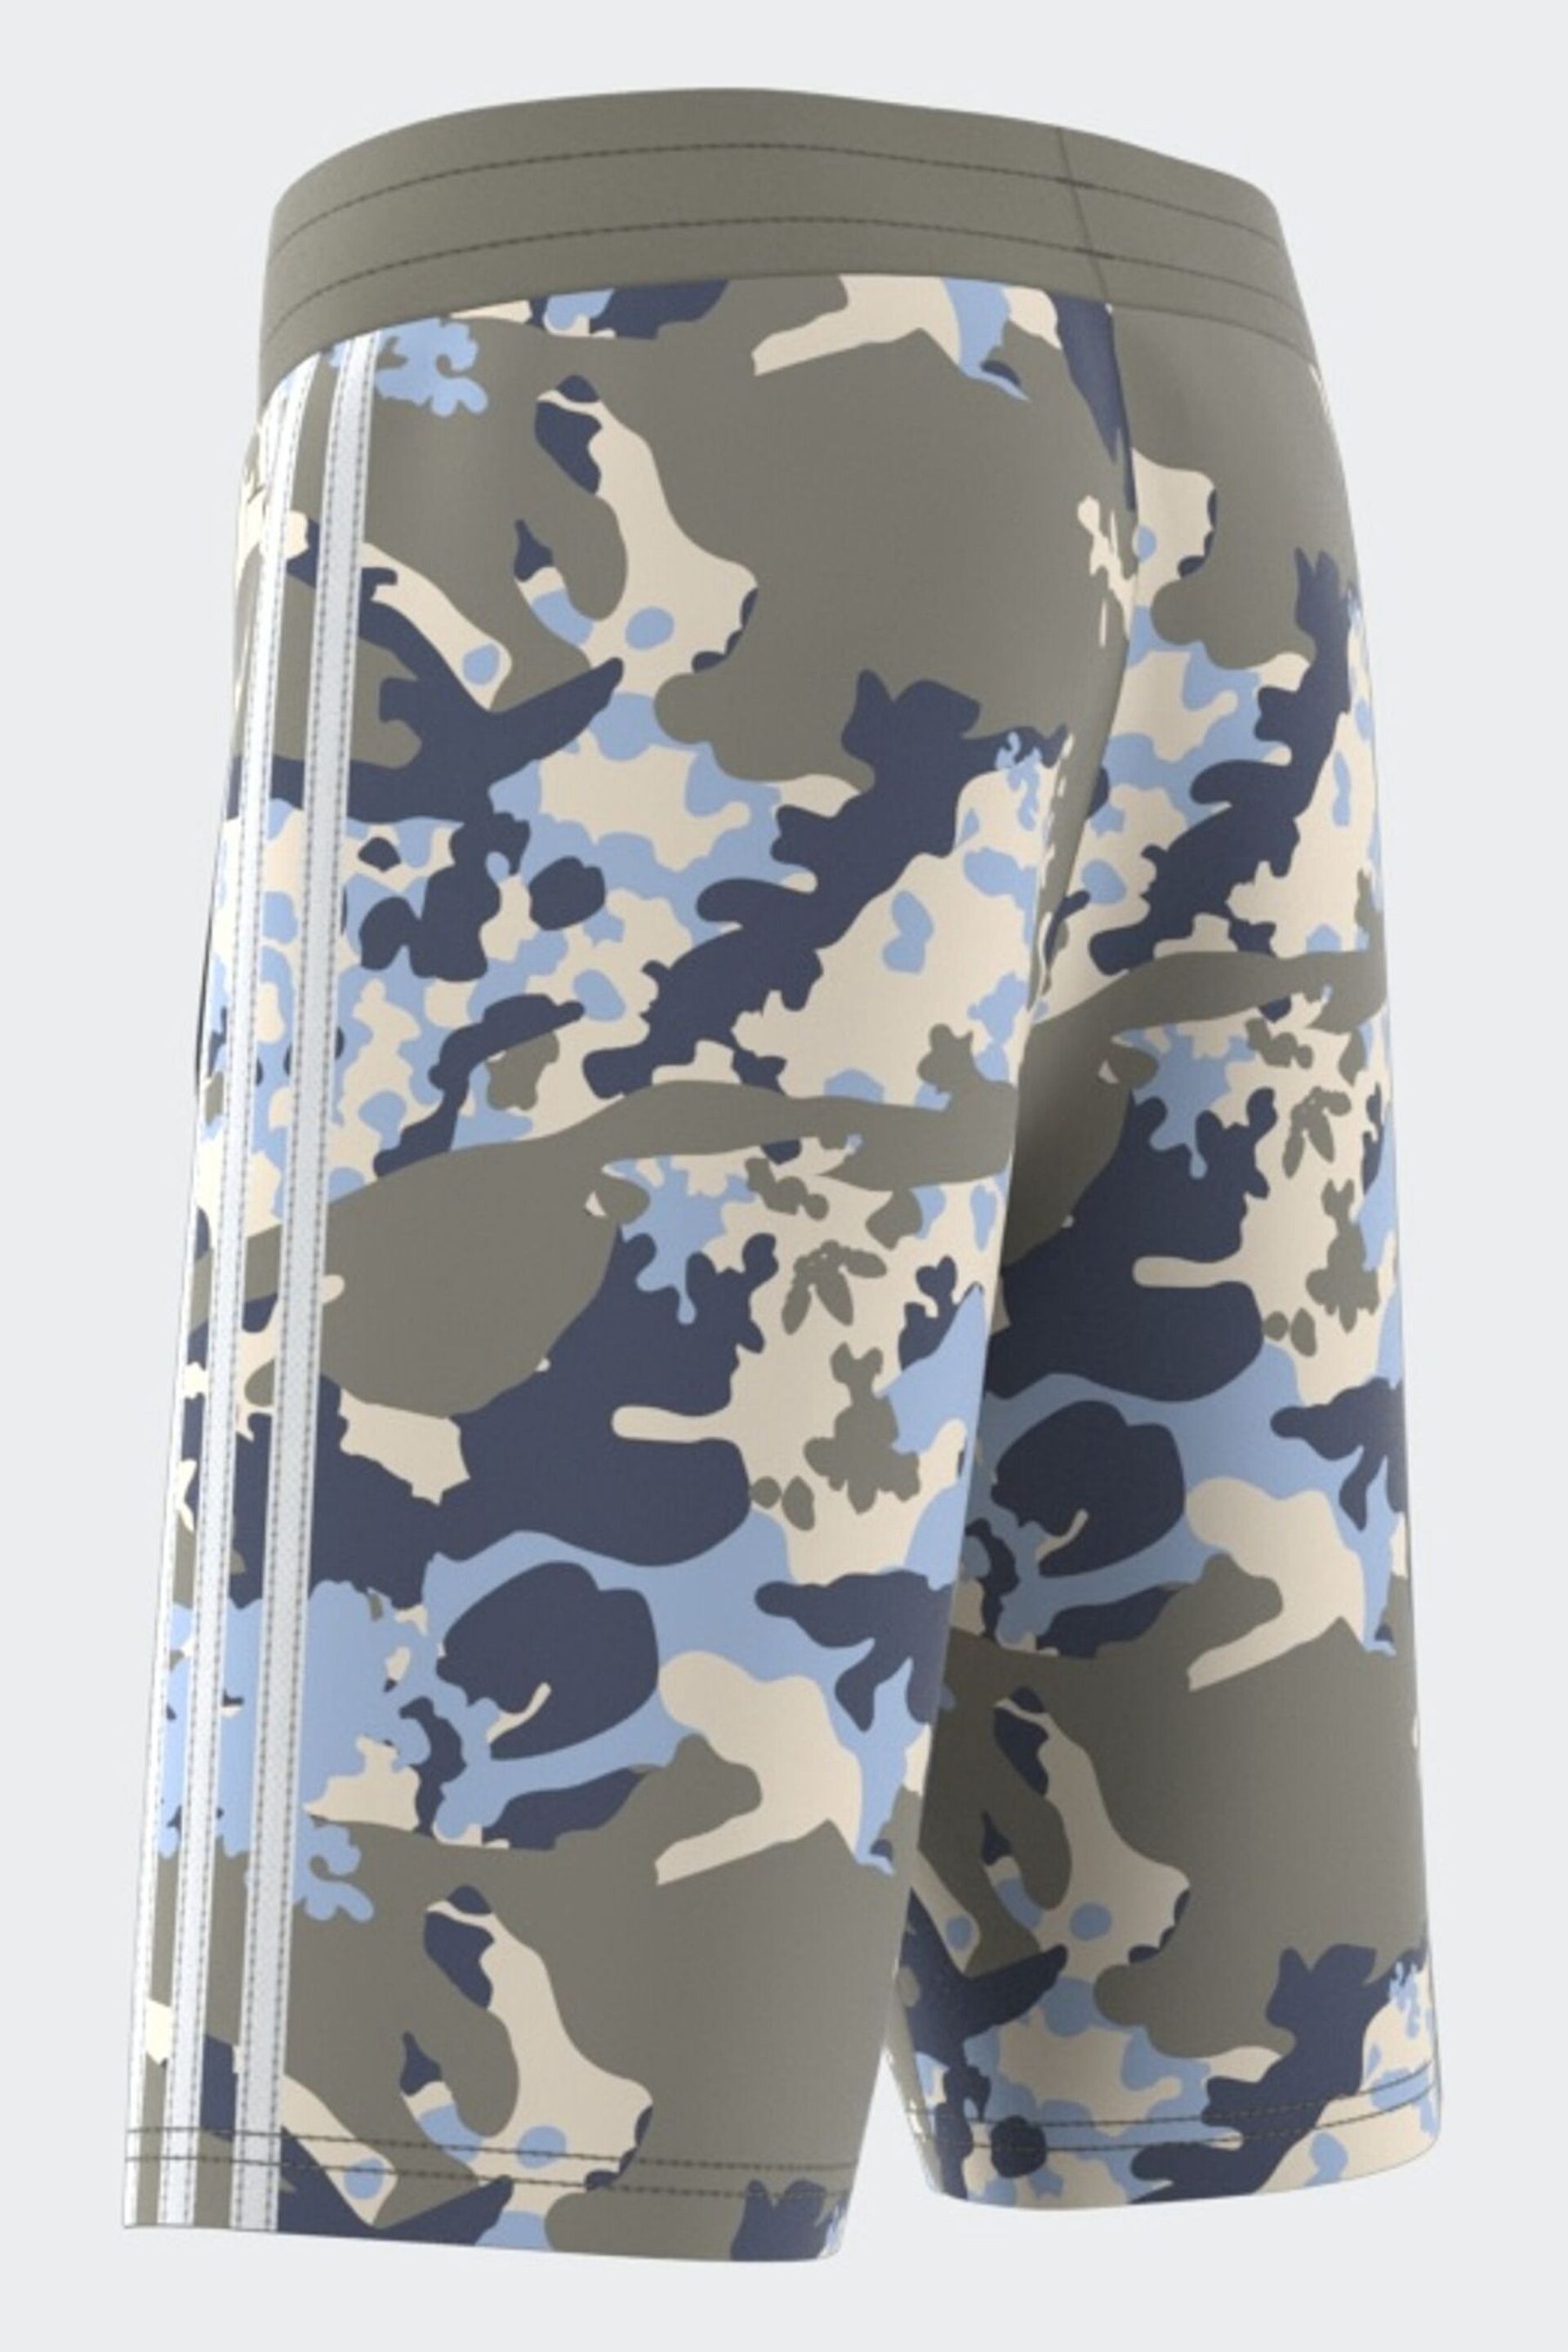 adidas Originals Grey/Blue Camo Shorts - Image 3 of 11